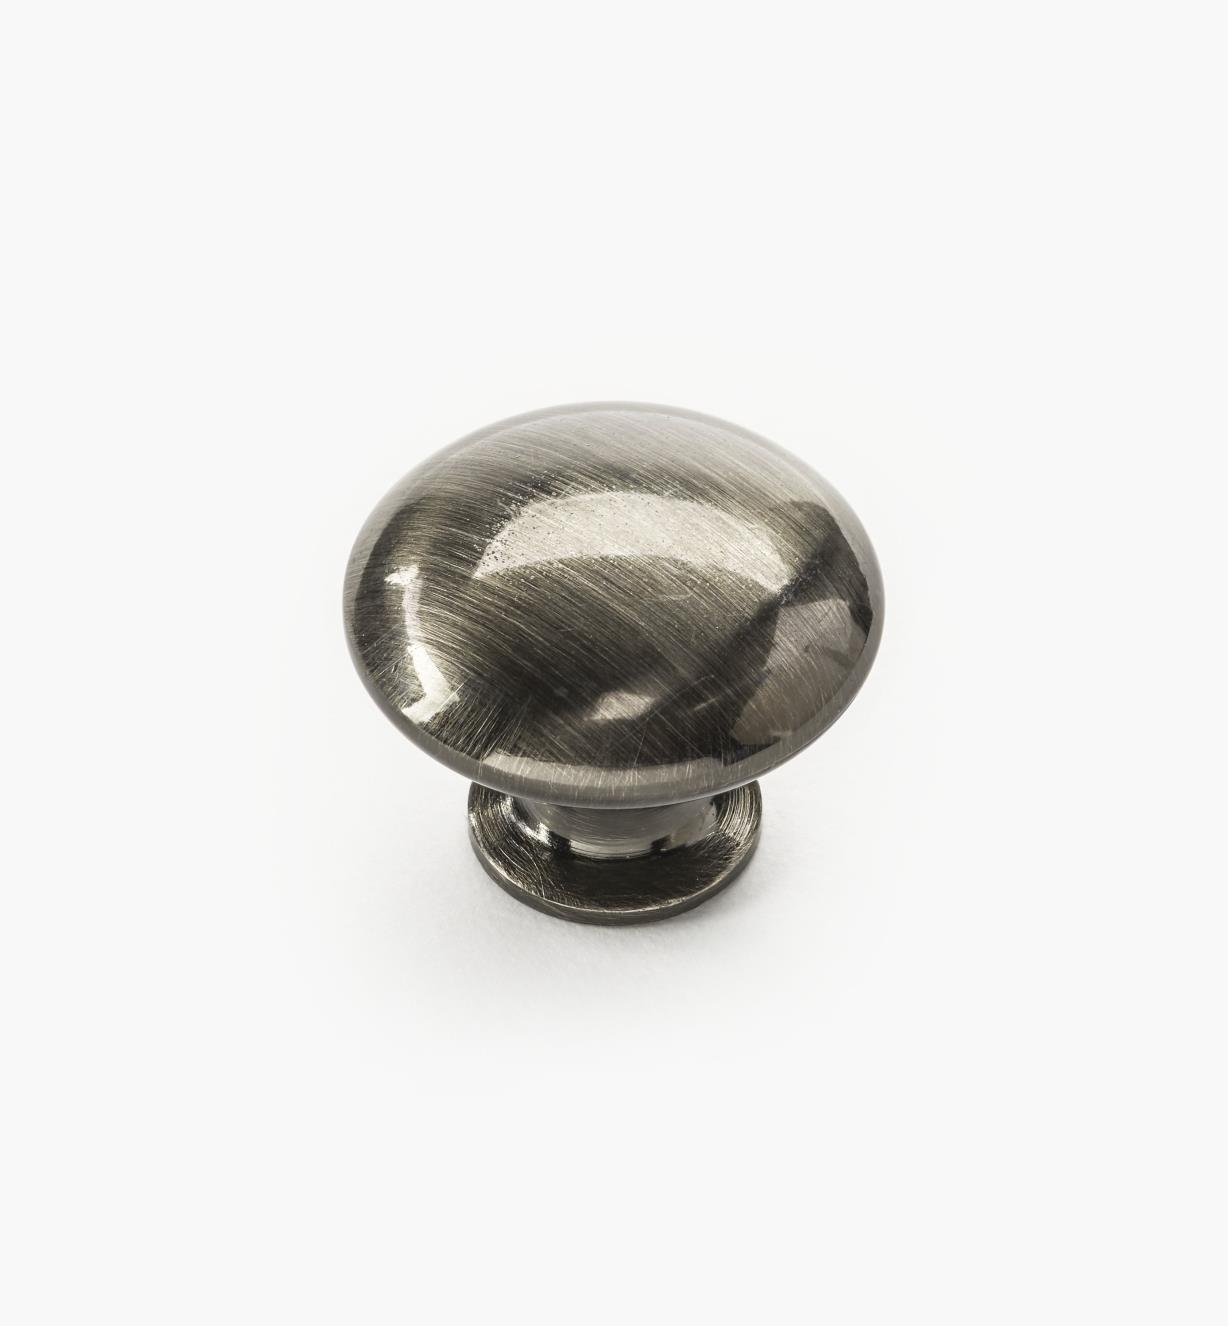 02W4366 - Bouton de 1 1/8 po x 7/8 po, collection classique, fini nickel noir brossé